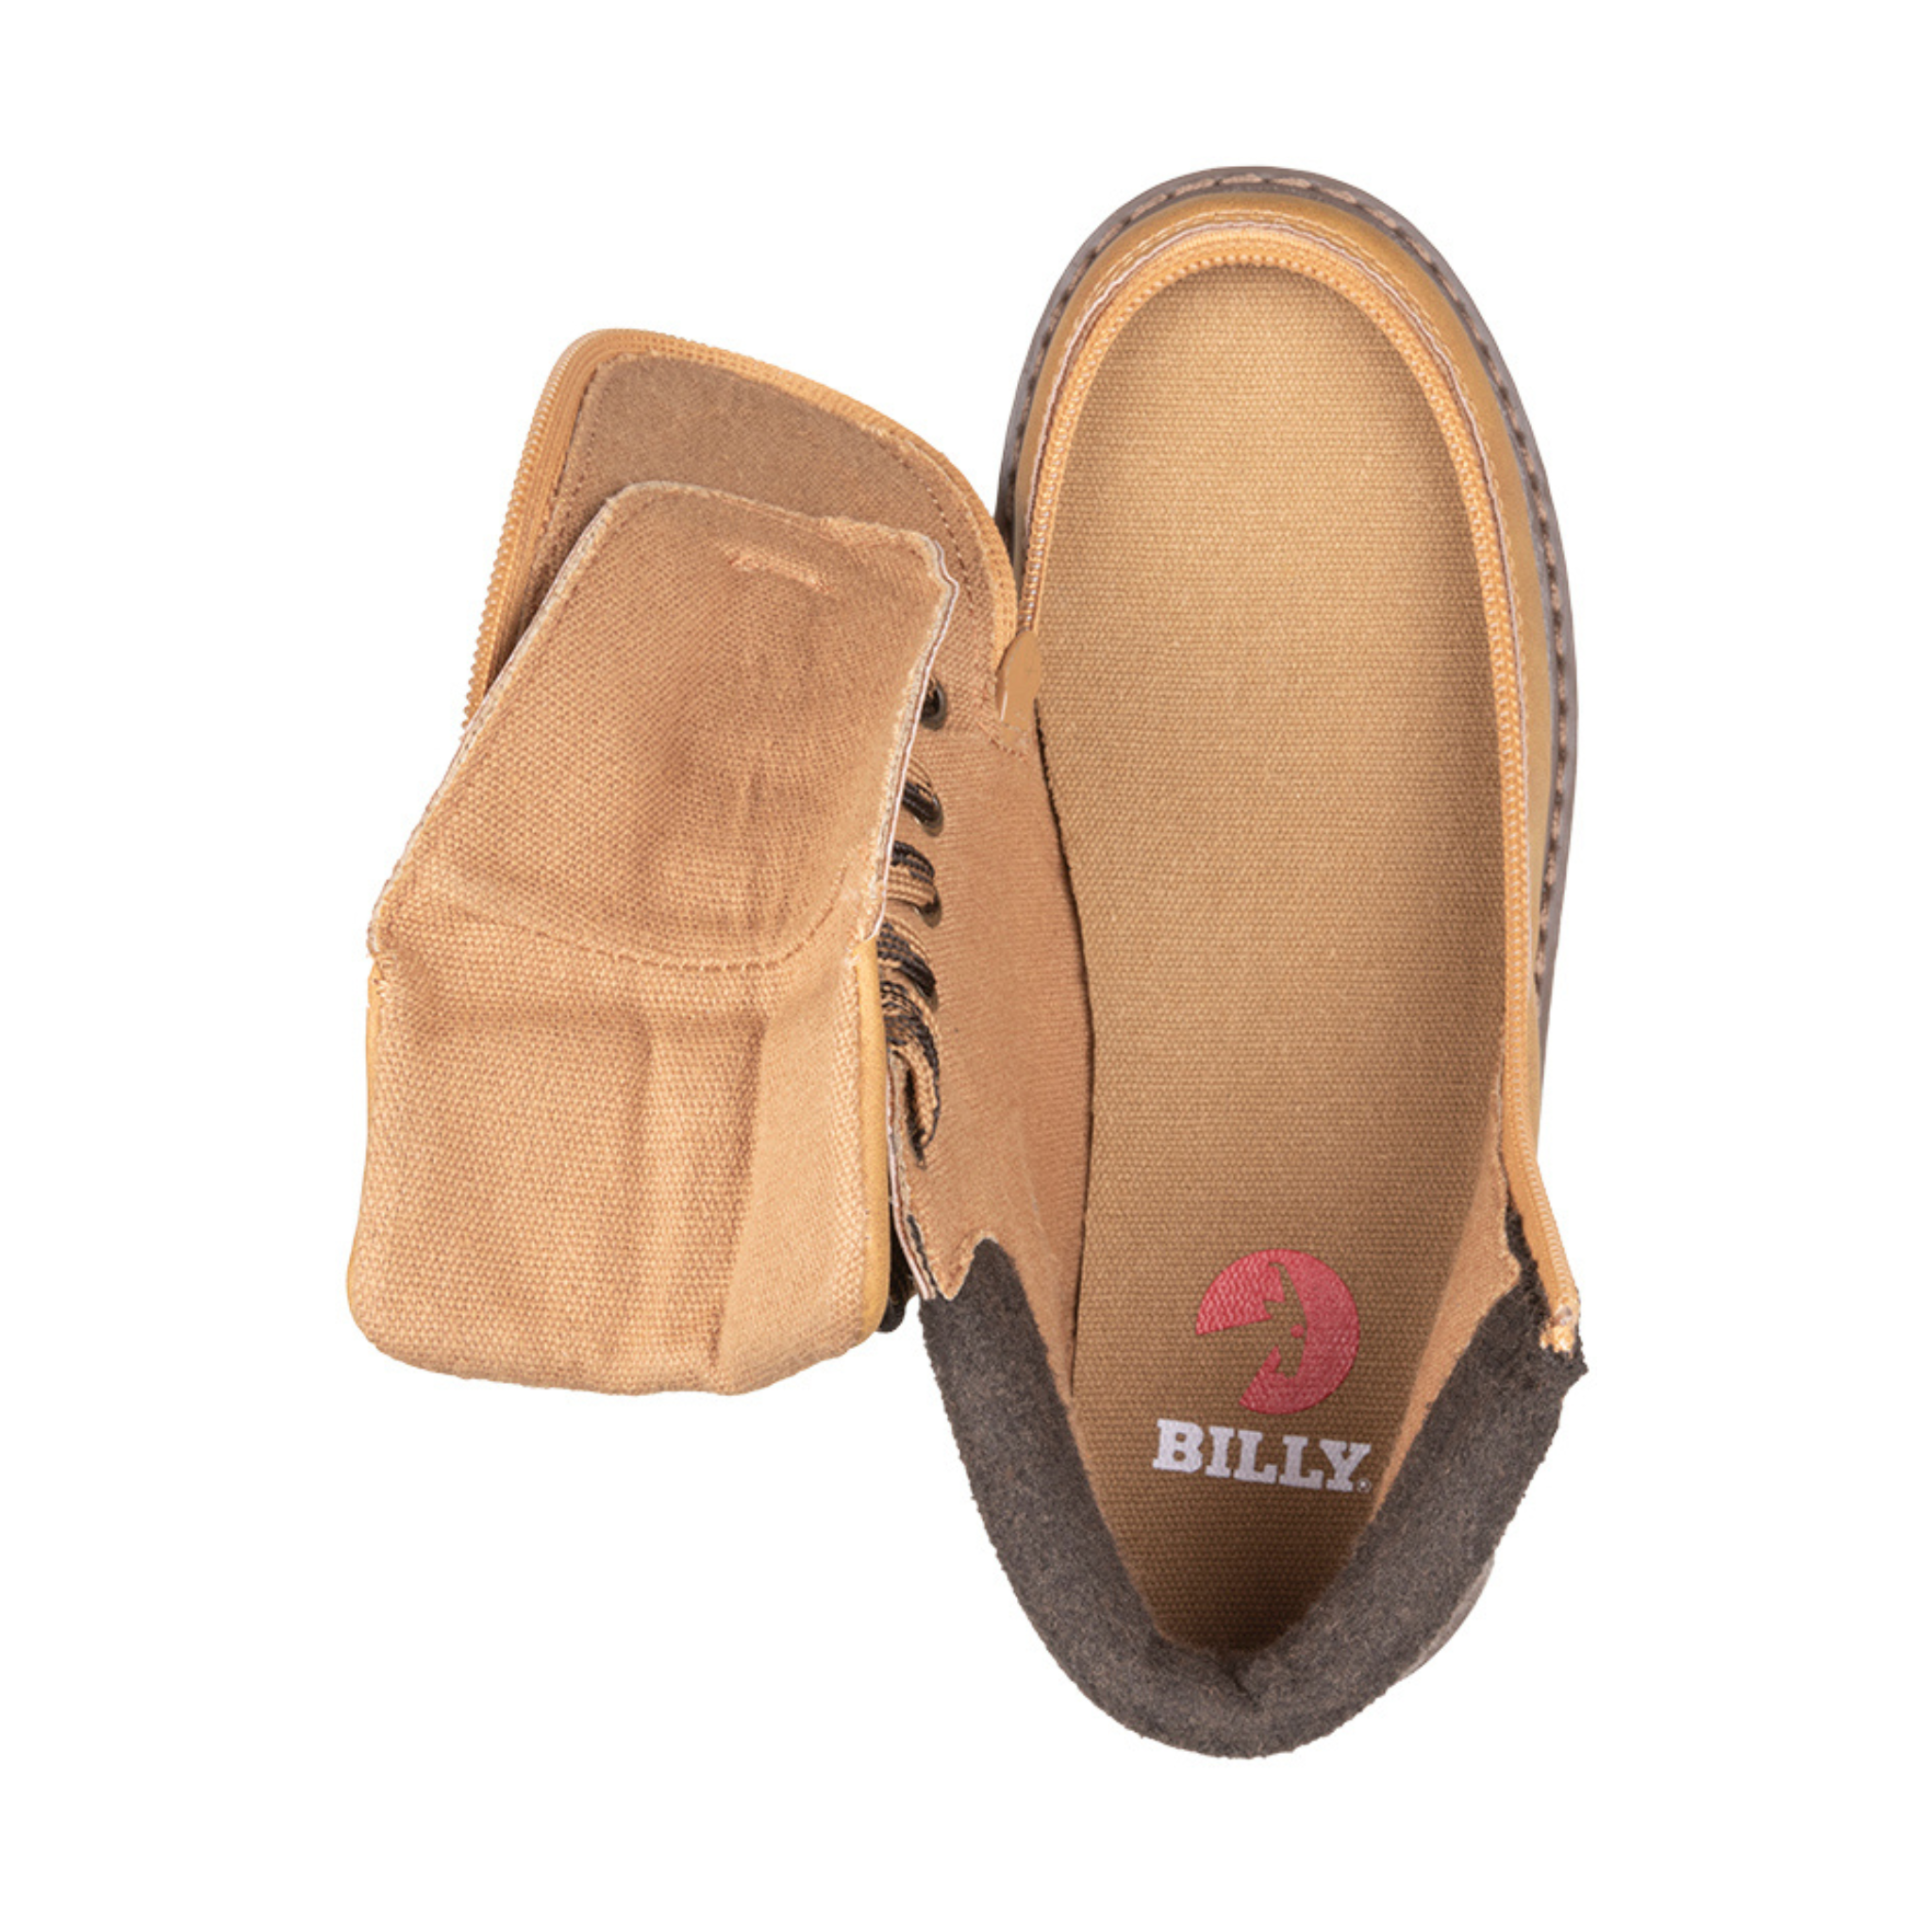 Billy Footwear (Kids) -  Tan Faux Leather Lug Boots